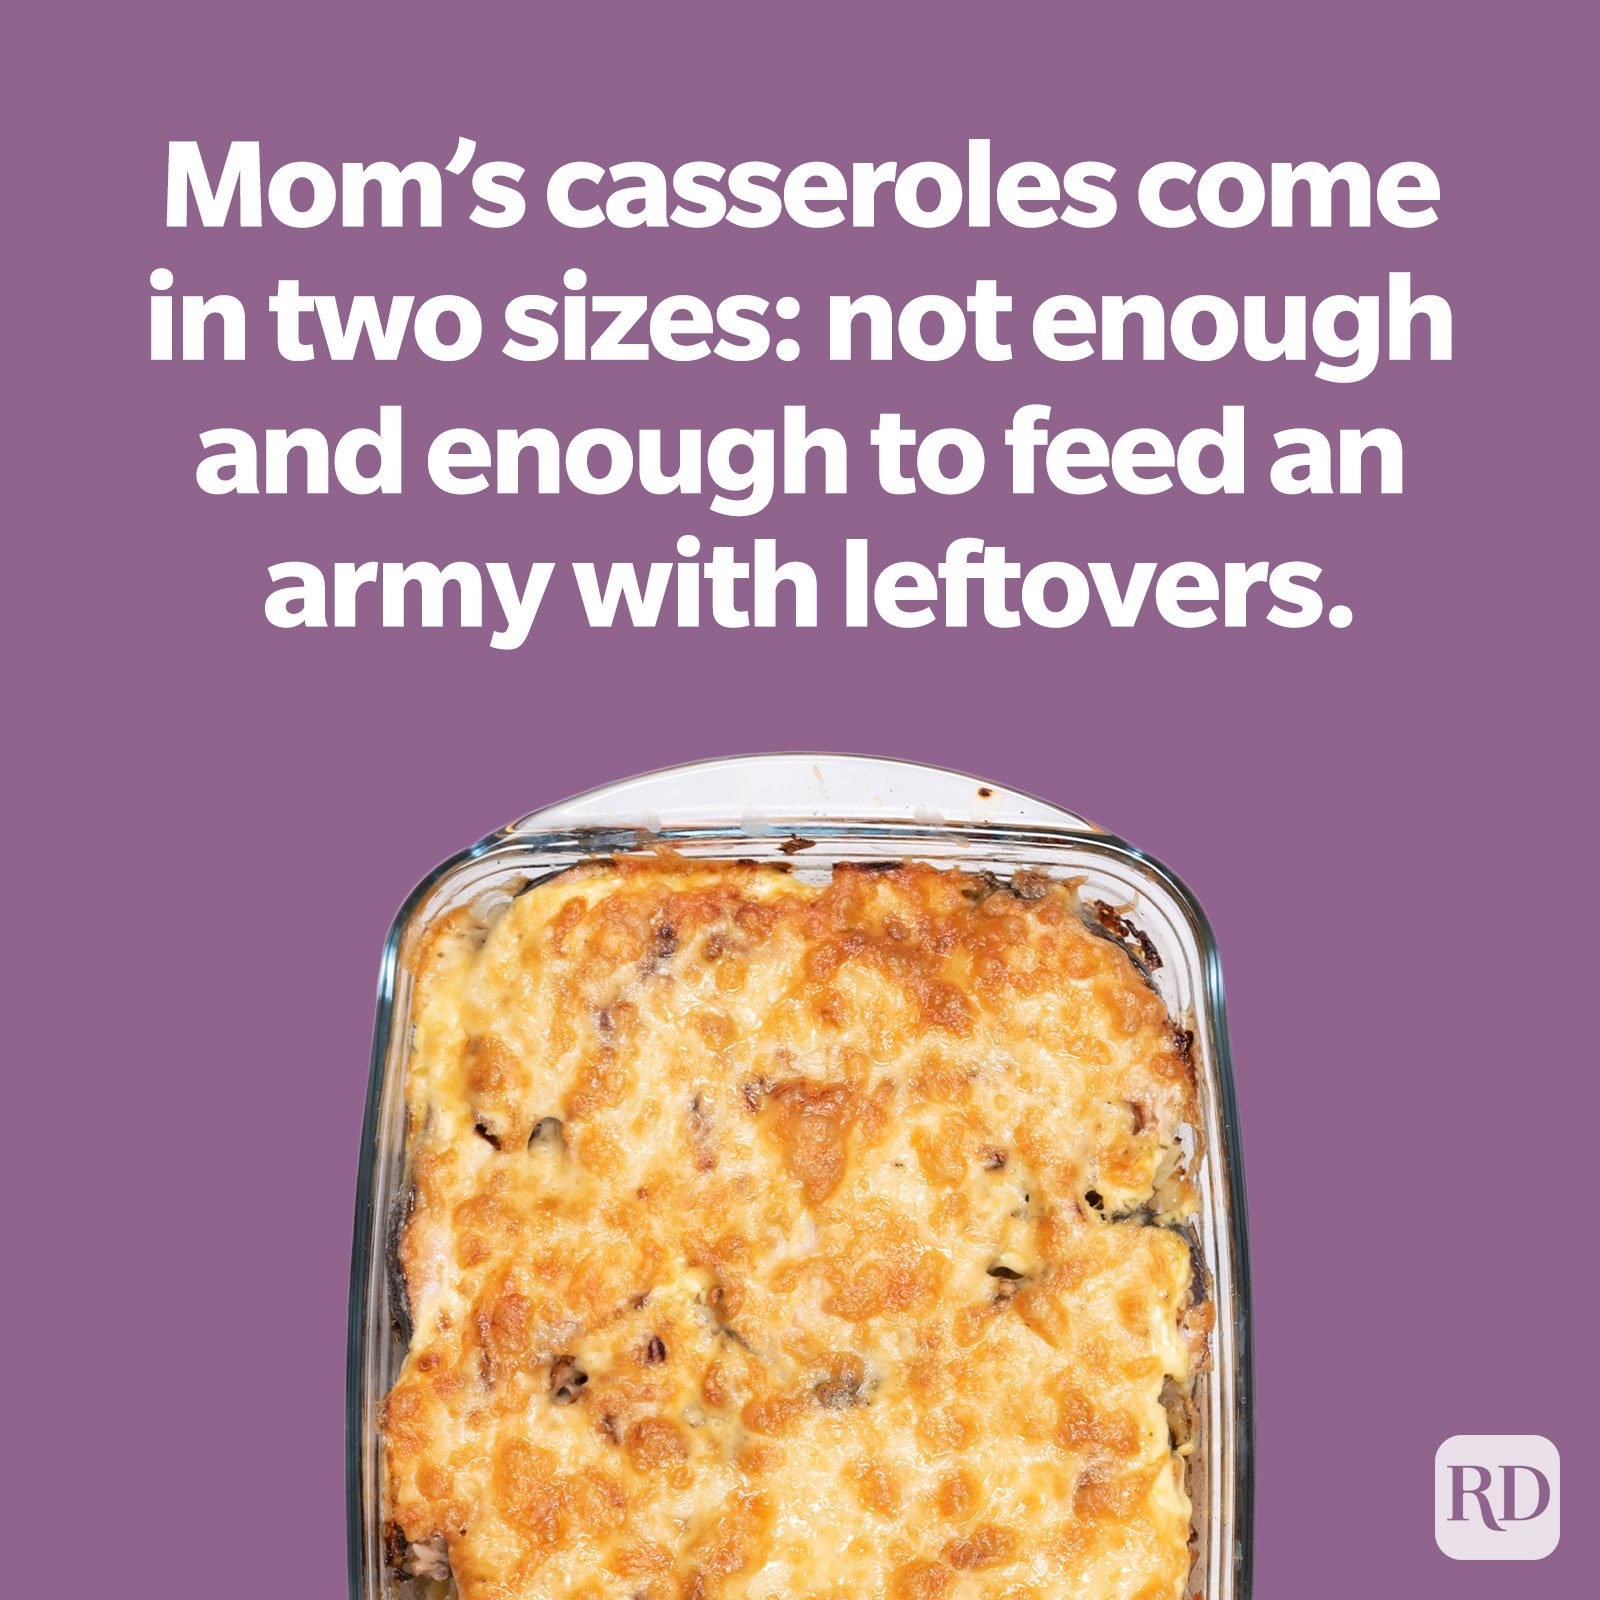 moms-casseroles-mom-joke.jpg